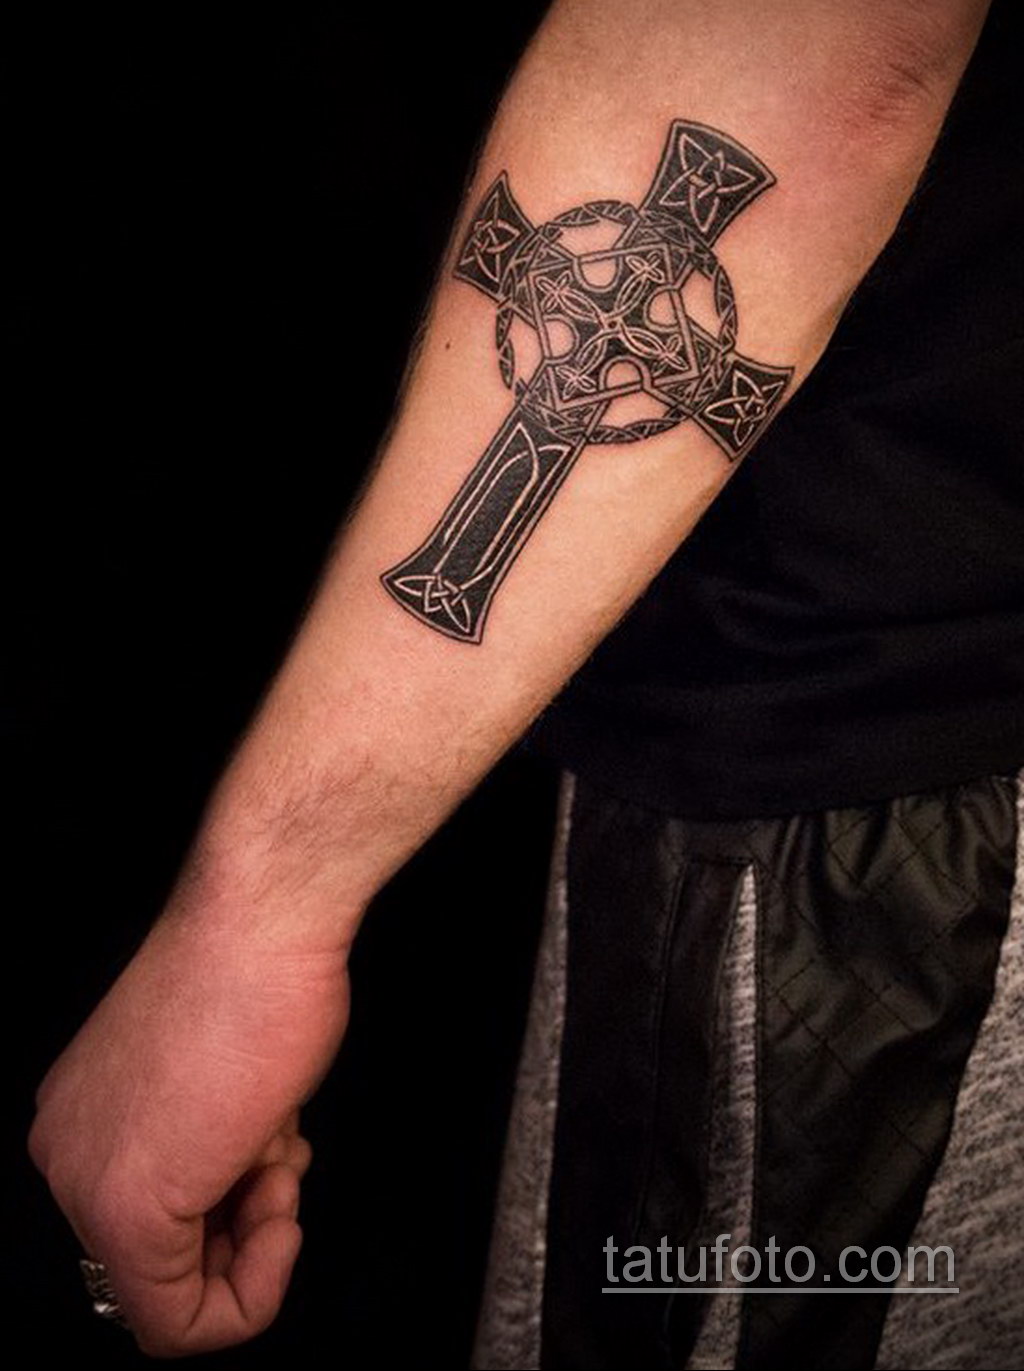 Татуировки крестов мужские. Кельтский крест на предплечье. Кельтский крест тату на предплечье. Тату крест на руке мужские. Кельтский крест тату на руке мужские.